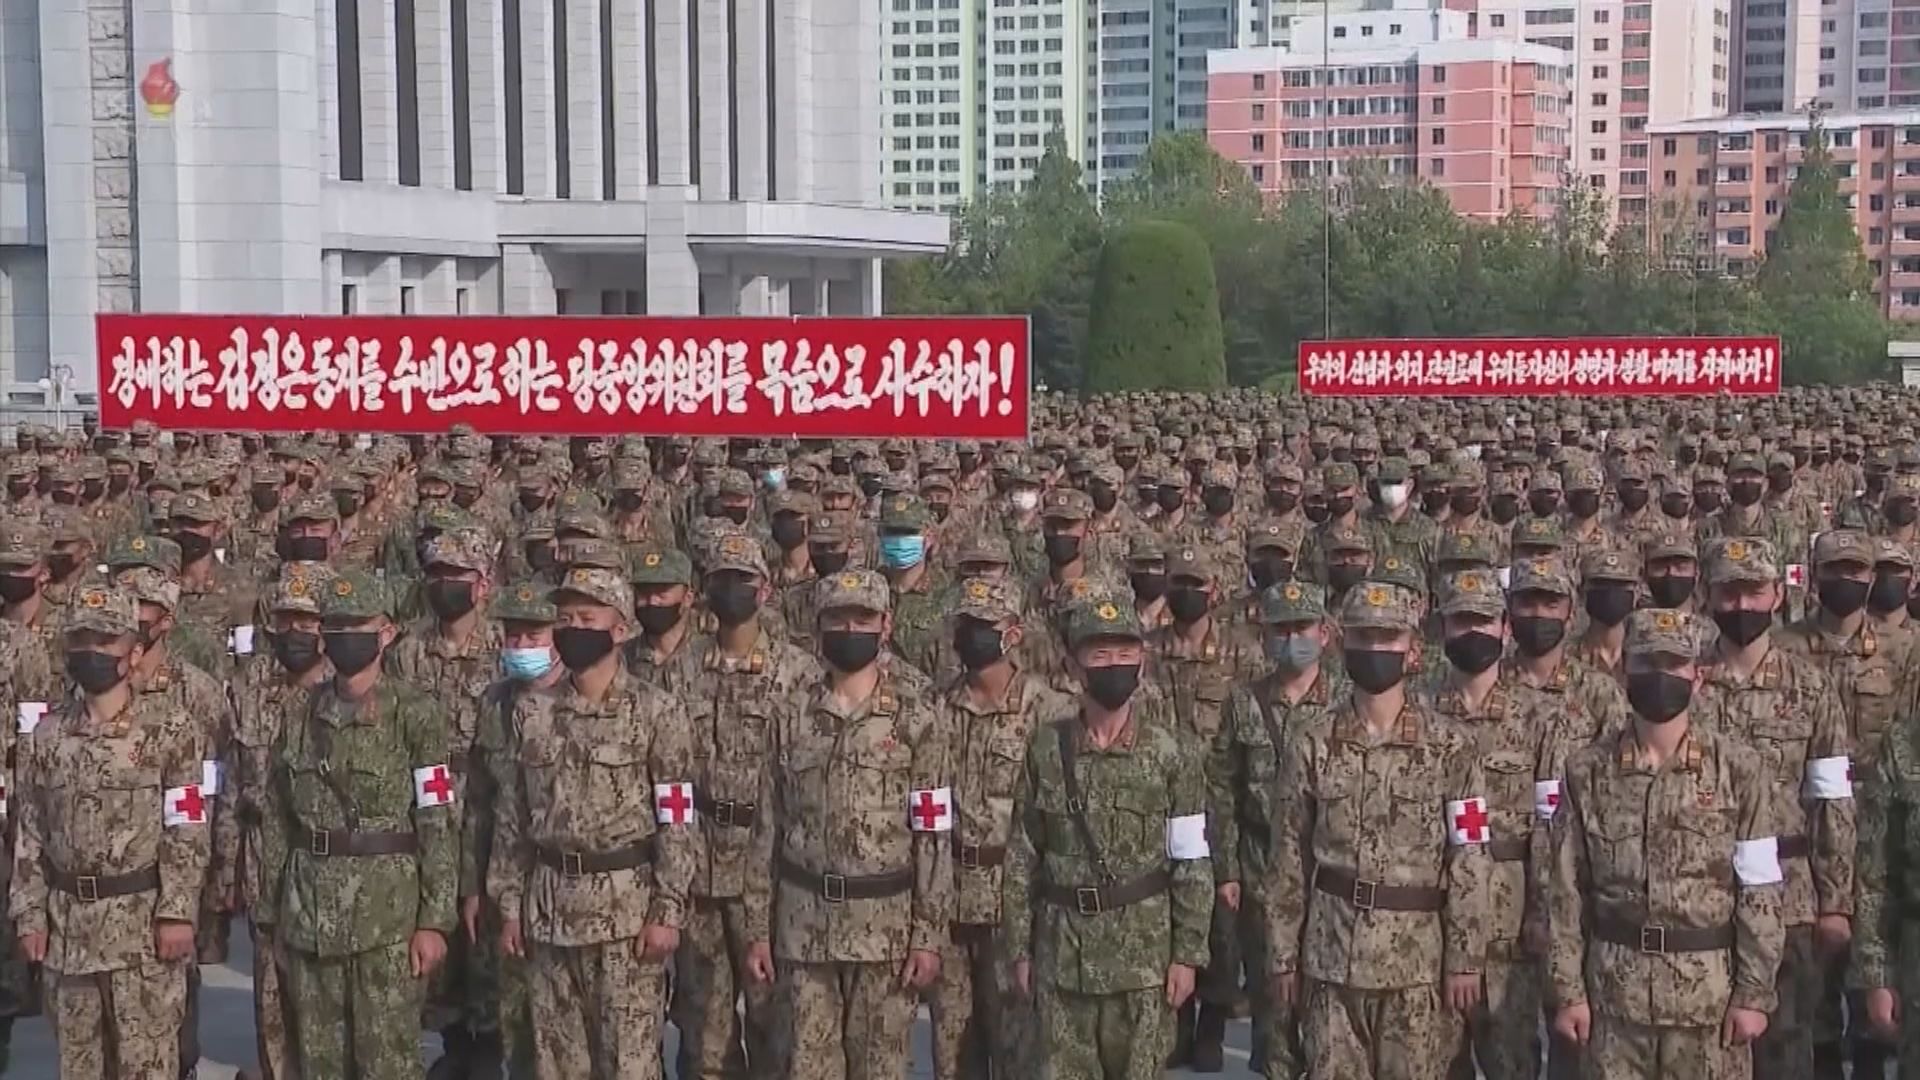 北韓動員過百萬人協助檢疫及治療發燒患者